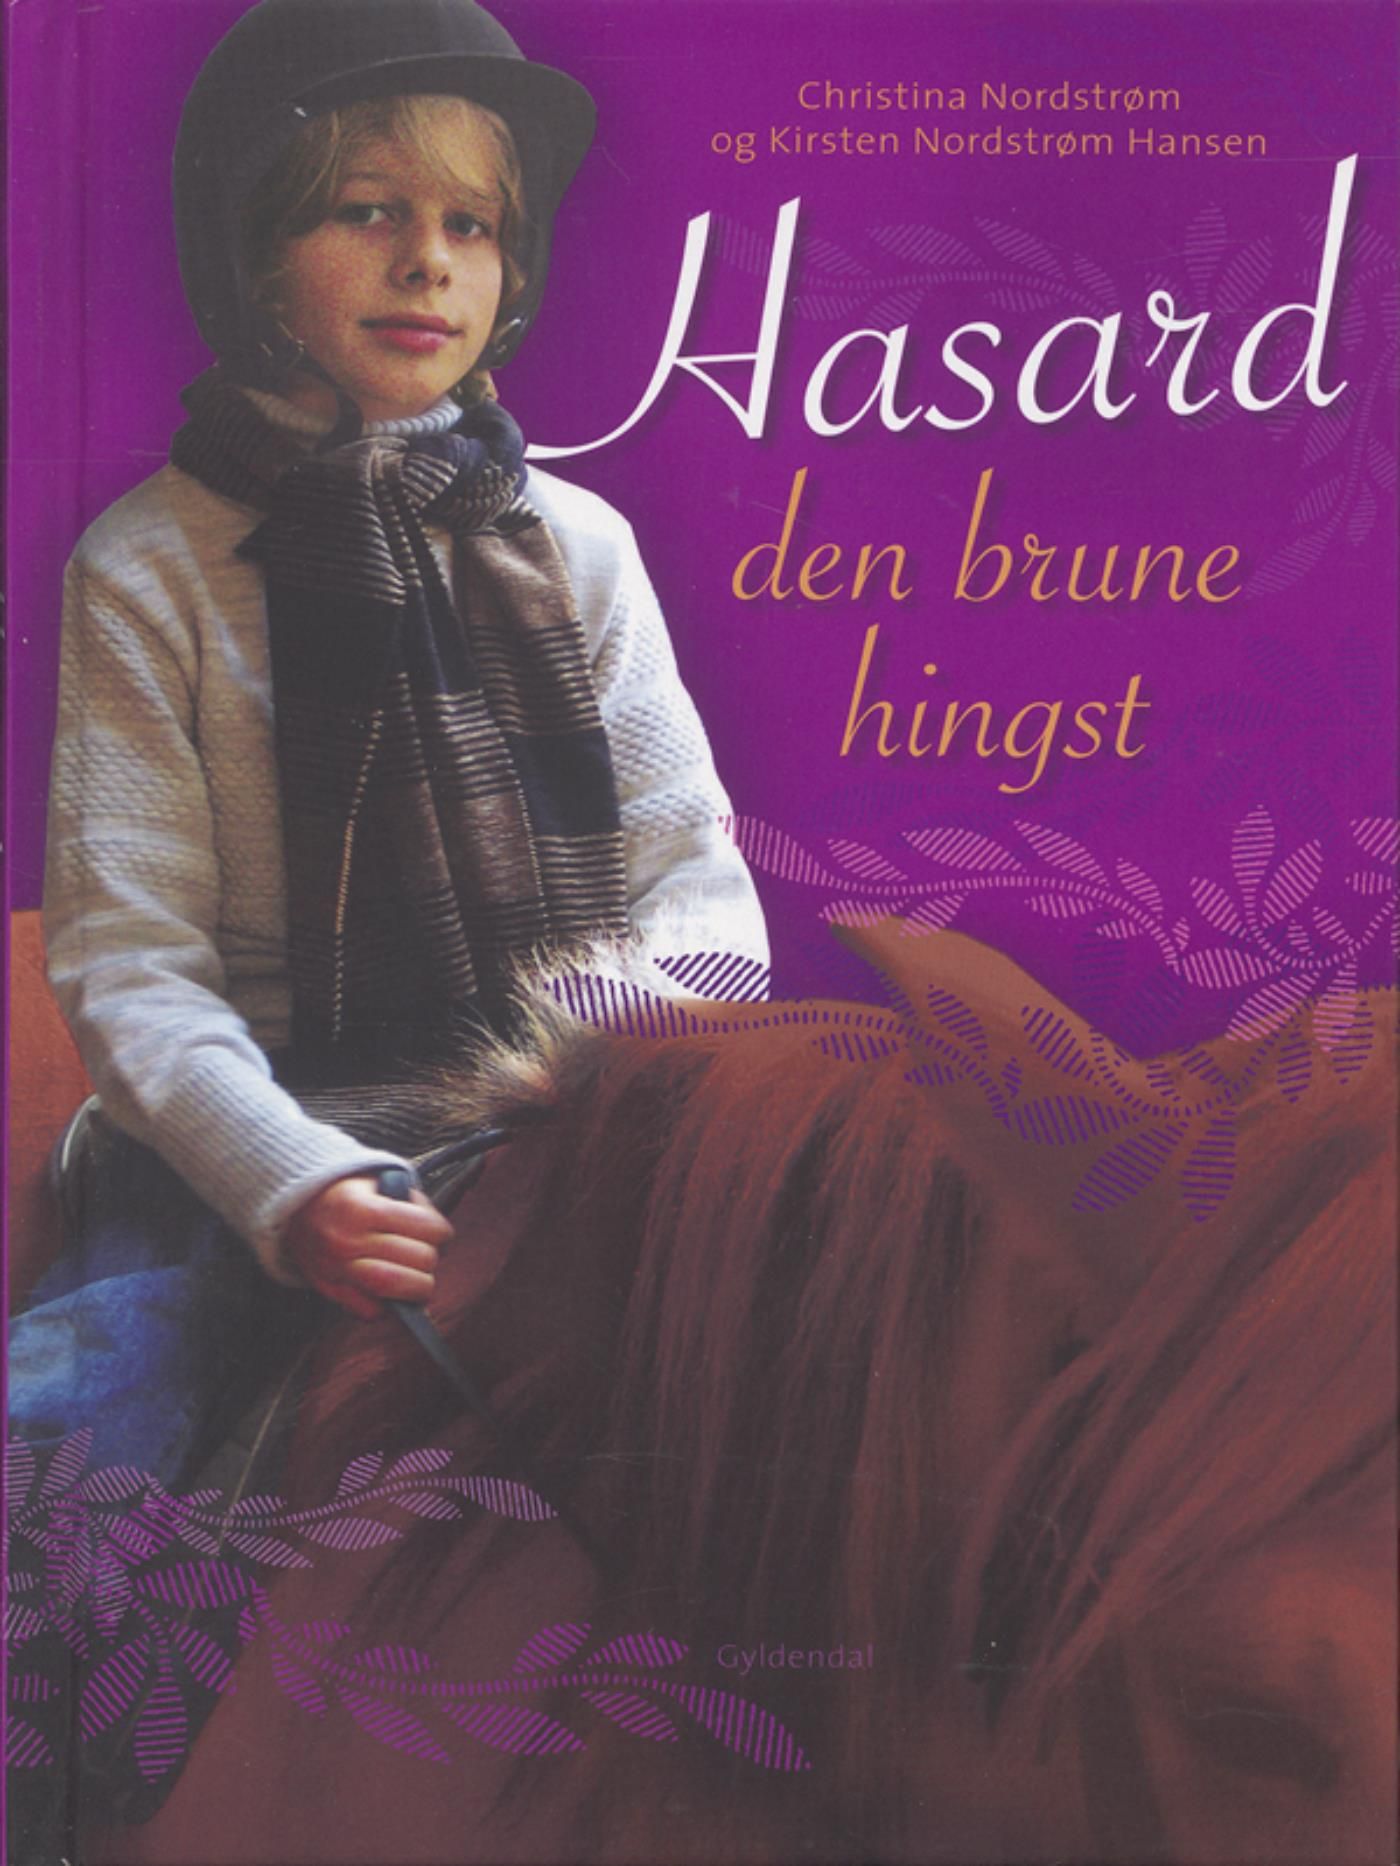 Hasard - den brune hingst, eBook by Kirsten Nordstrøm Hansen, Christina Nordstrøm